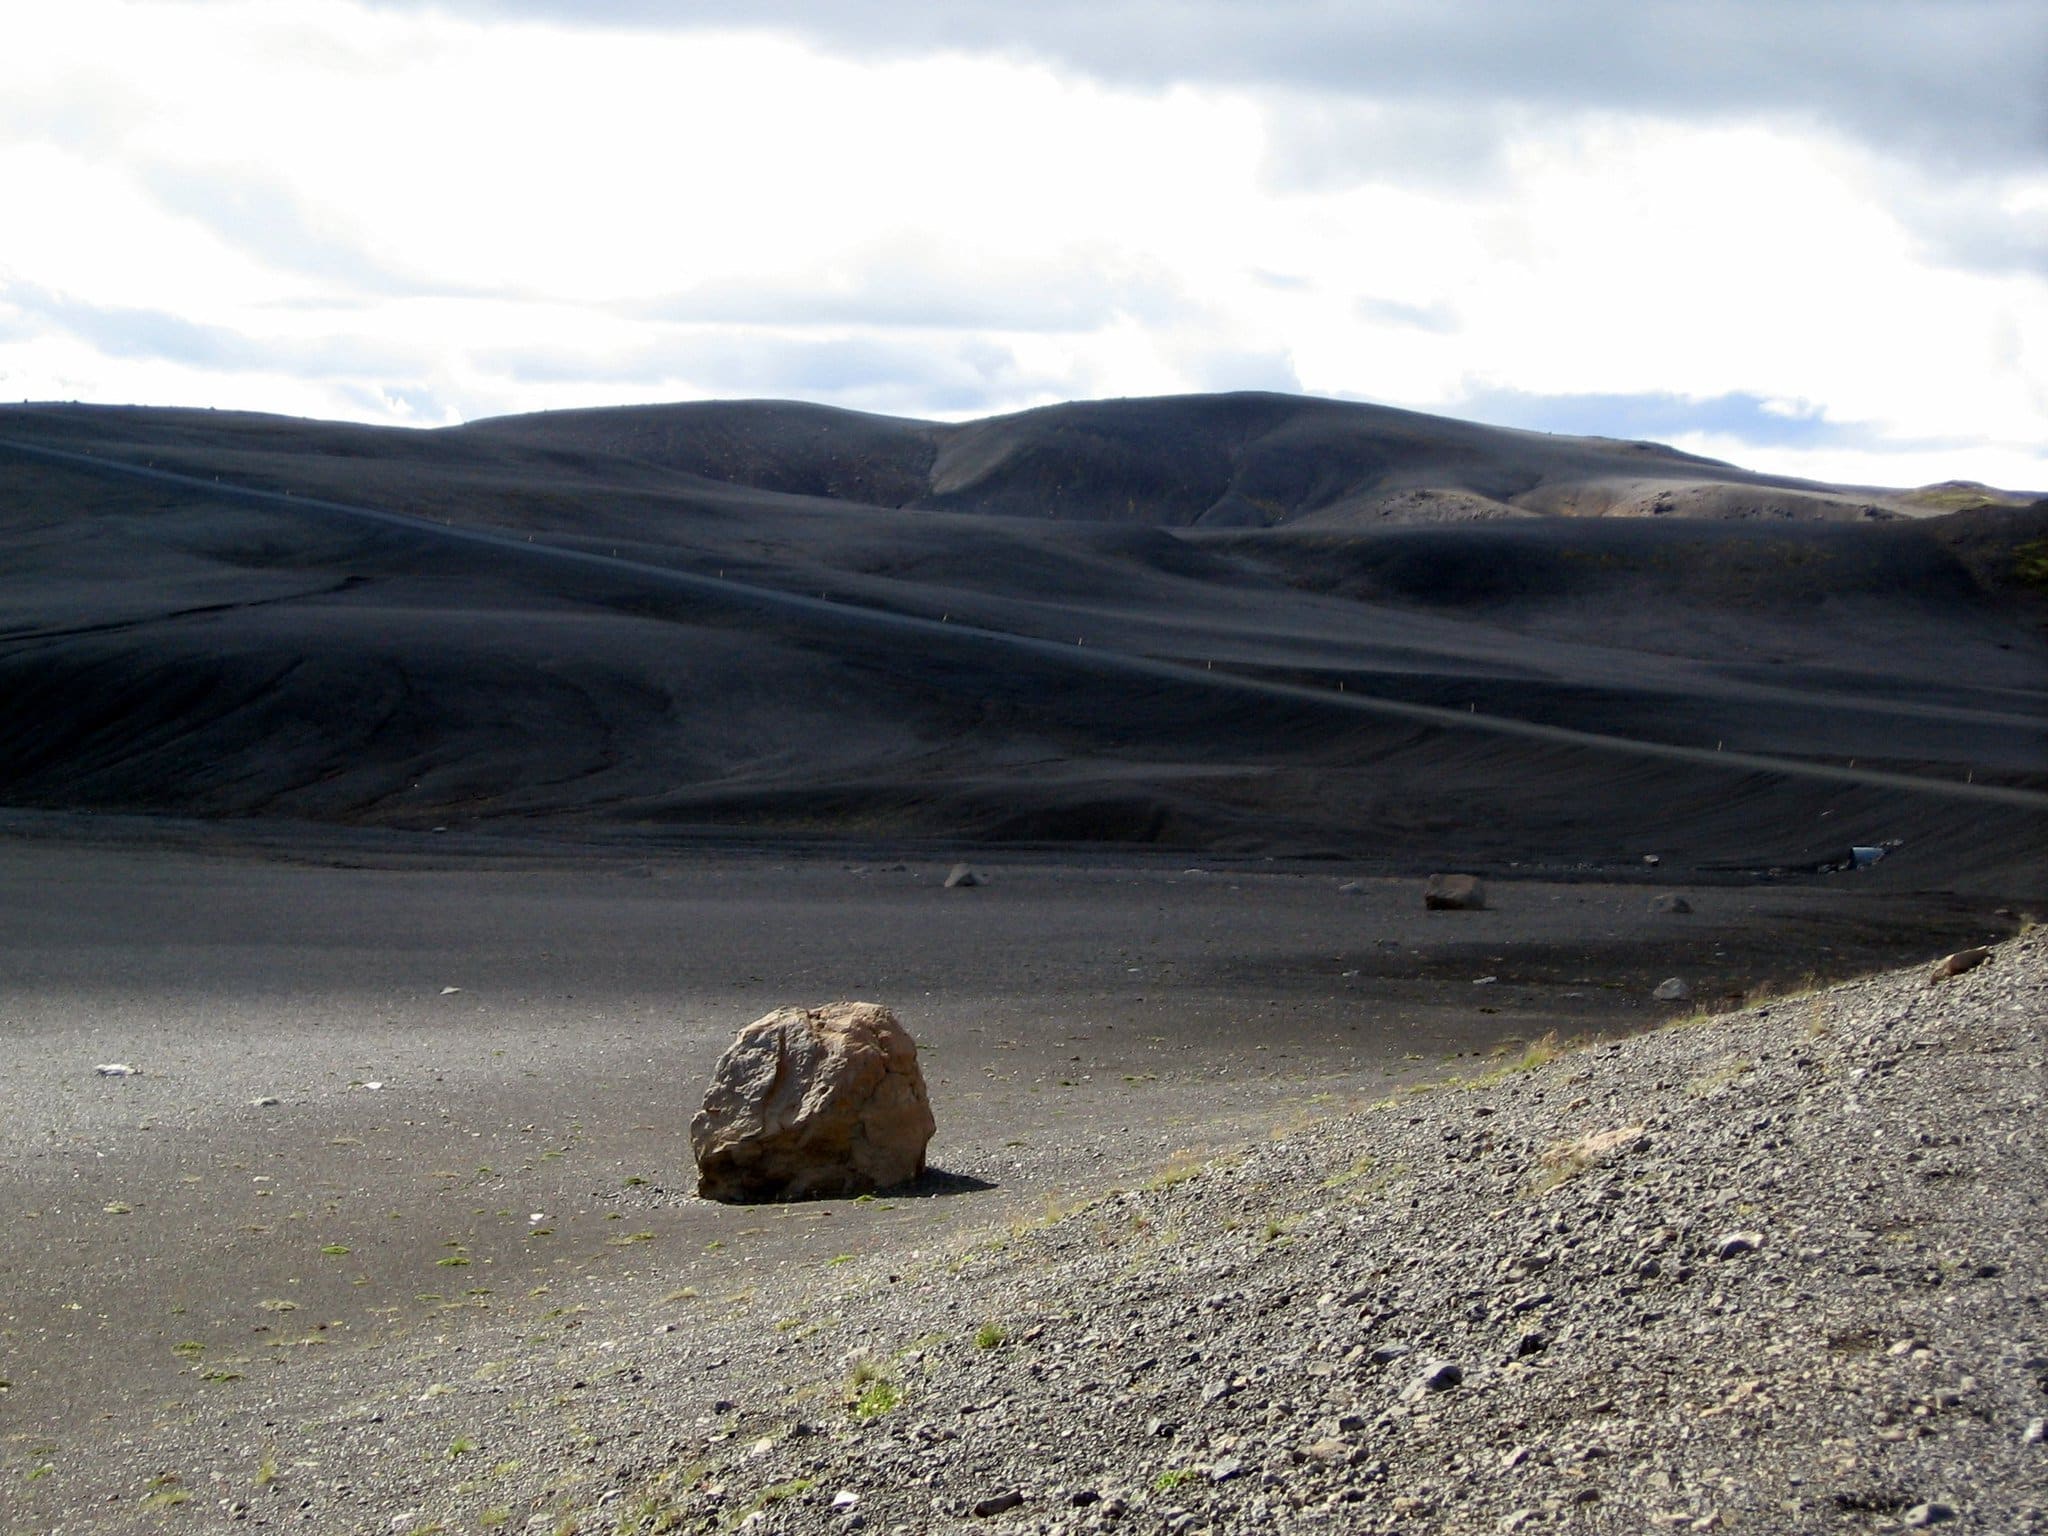 The black desert of Sprengisandur in the Icelandic Highlands.